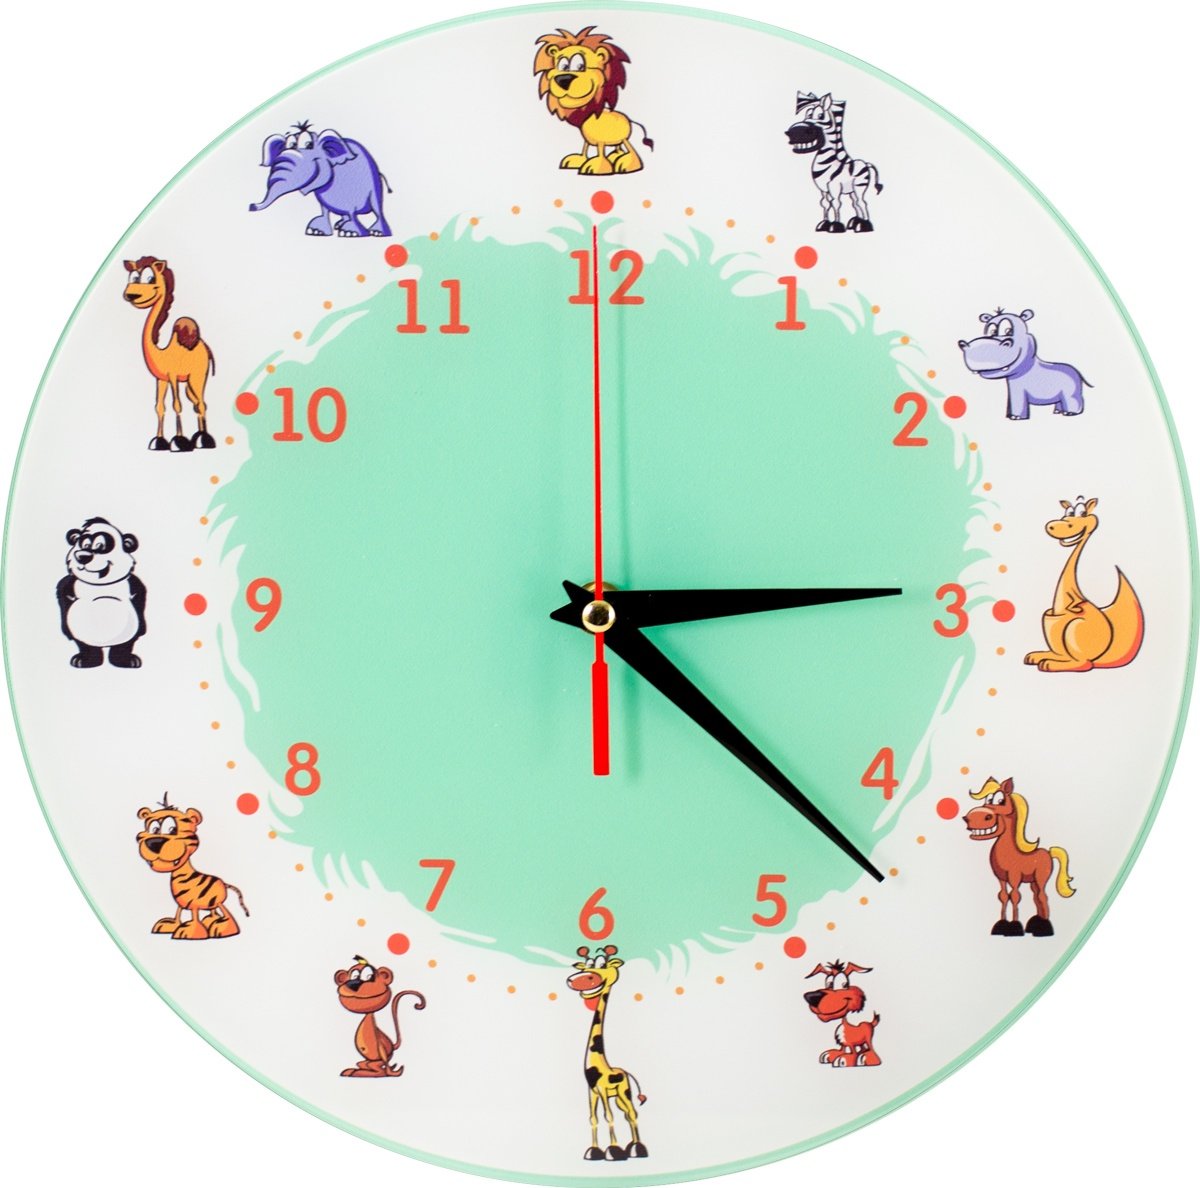 Настенные часы с минутами. Циферблат часов. Часы для детской комнаты. Часы настенные. Часы настенные для детей.